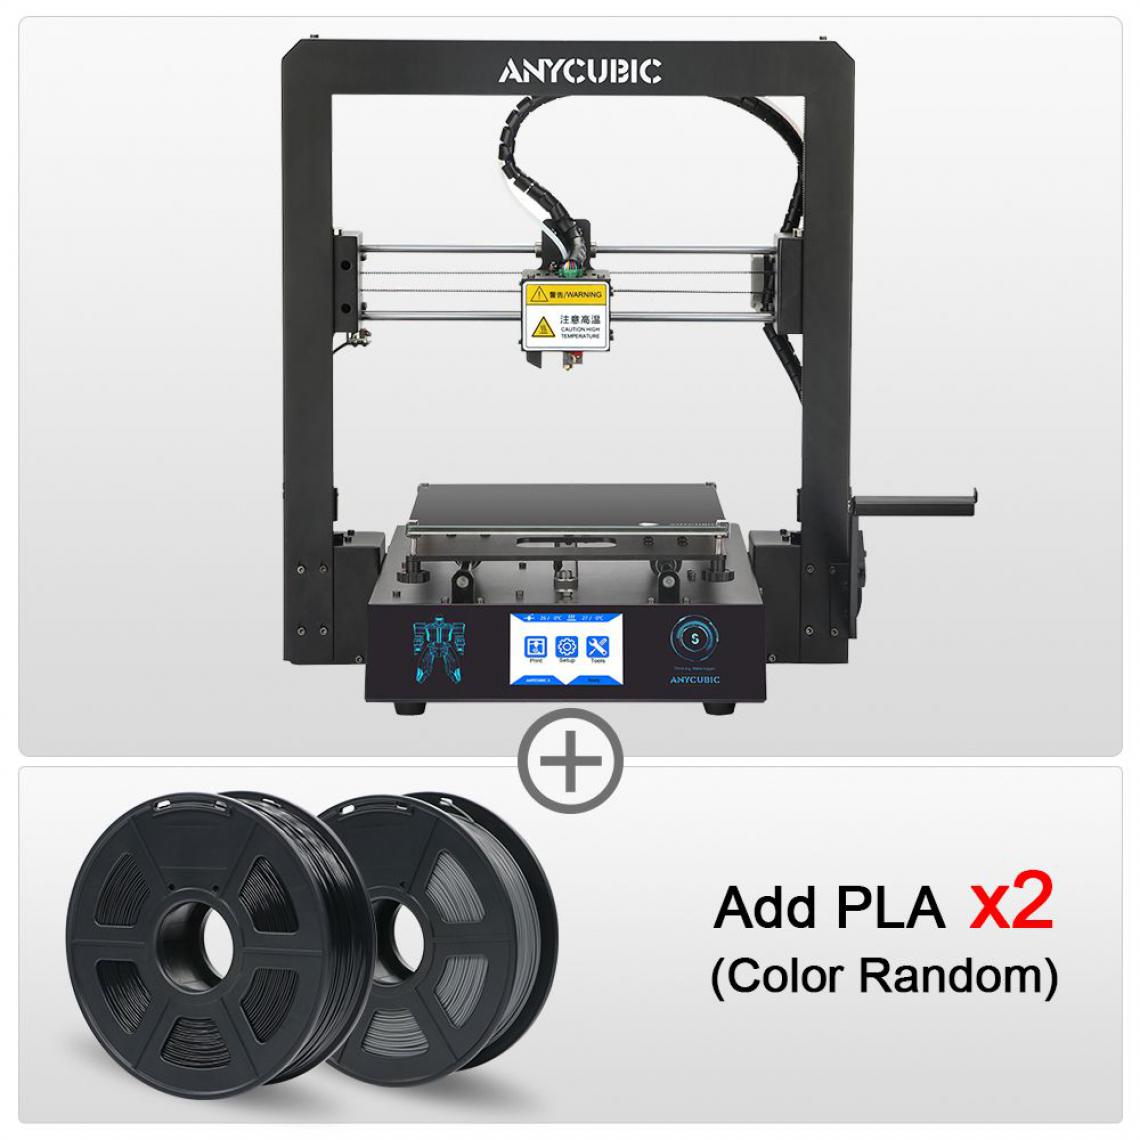 Generic - Imprimante 3D ANYCUBIC i3 Mega S  avec à 1 Tête d'Impression  PLA, ABS, TPU,PETG et Cadre Entièrement Métallique et 2  Filaments 21 * 21 * 20.5 cm - Noir  - Imprimante 3D